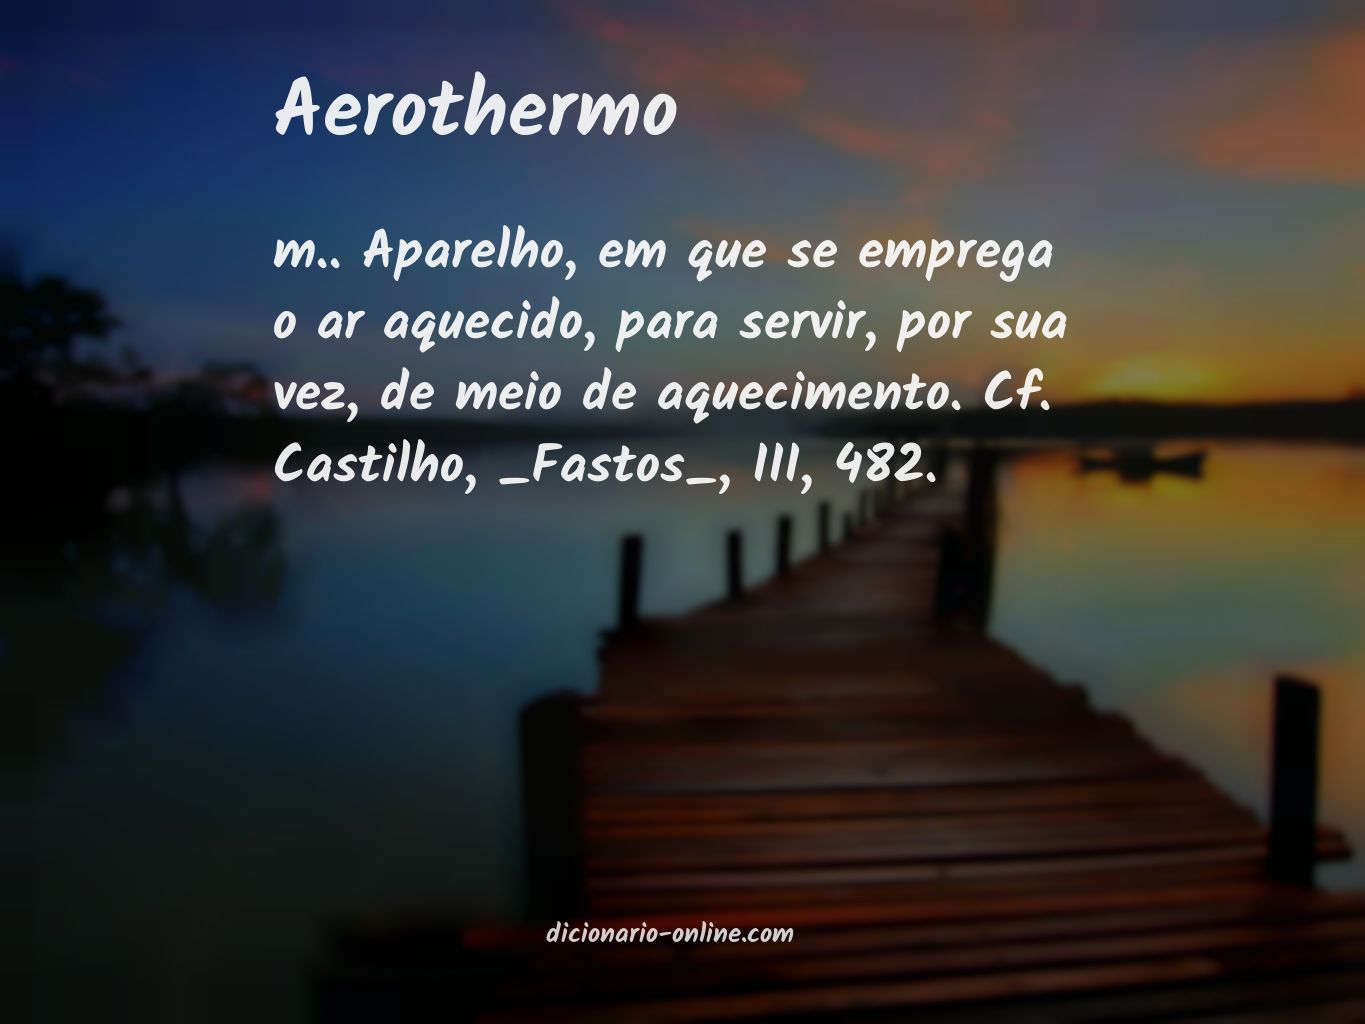 Significado de aerothermo